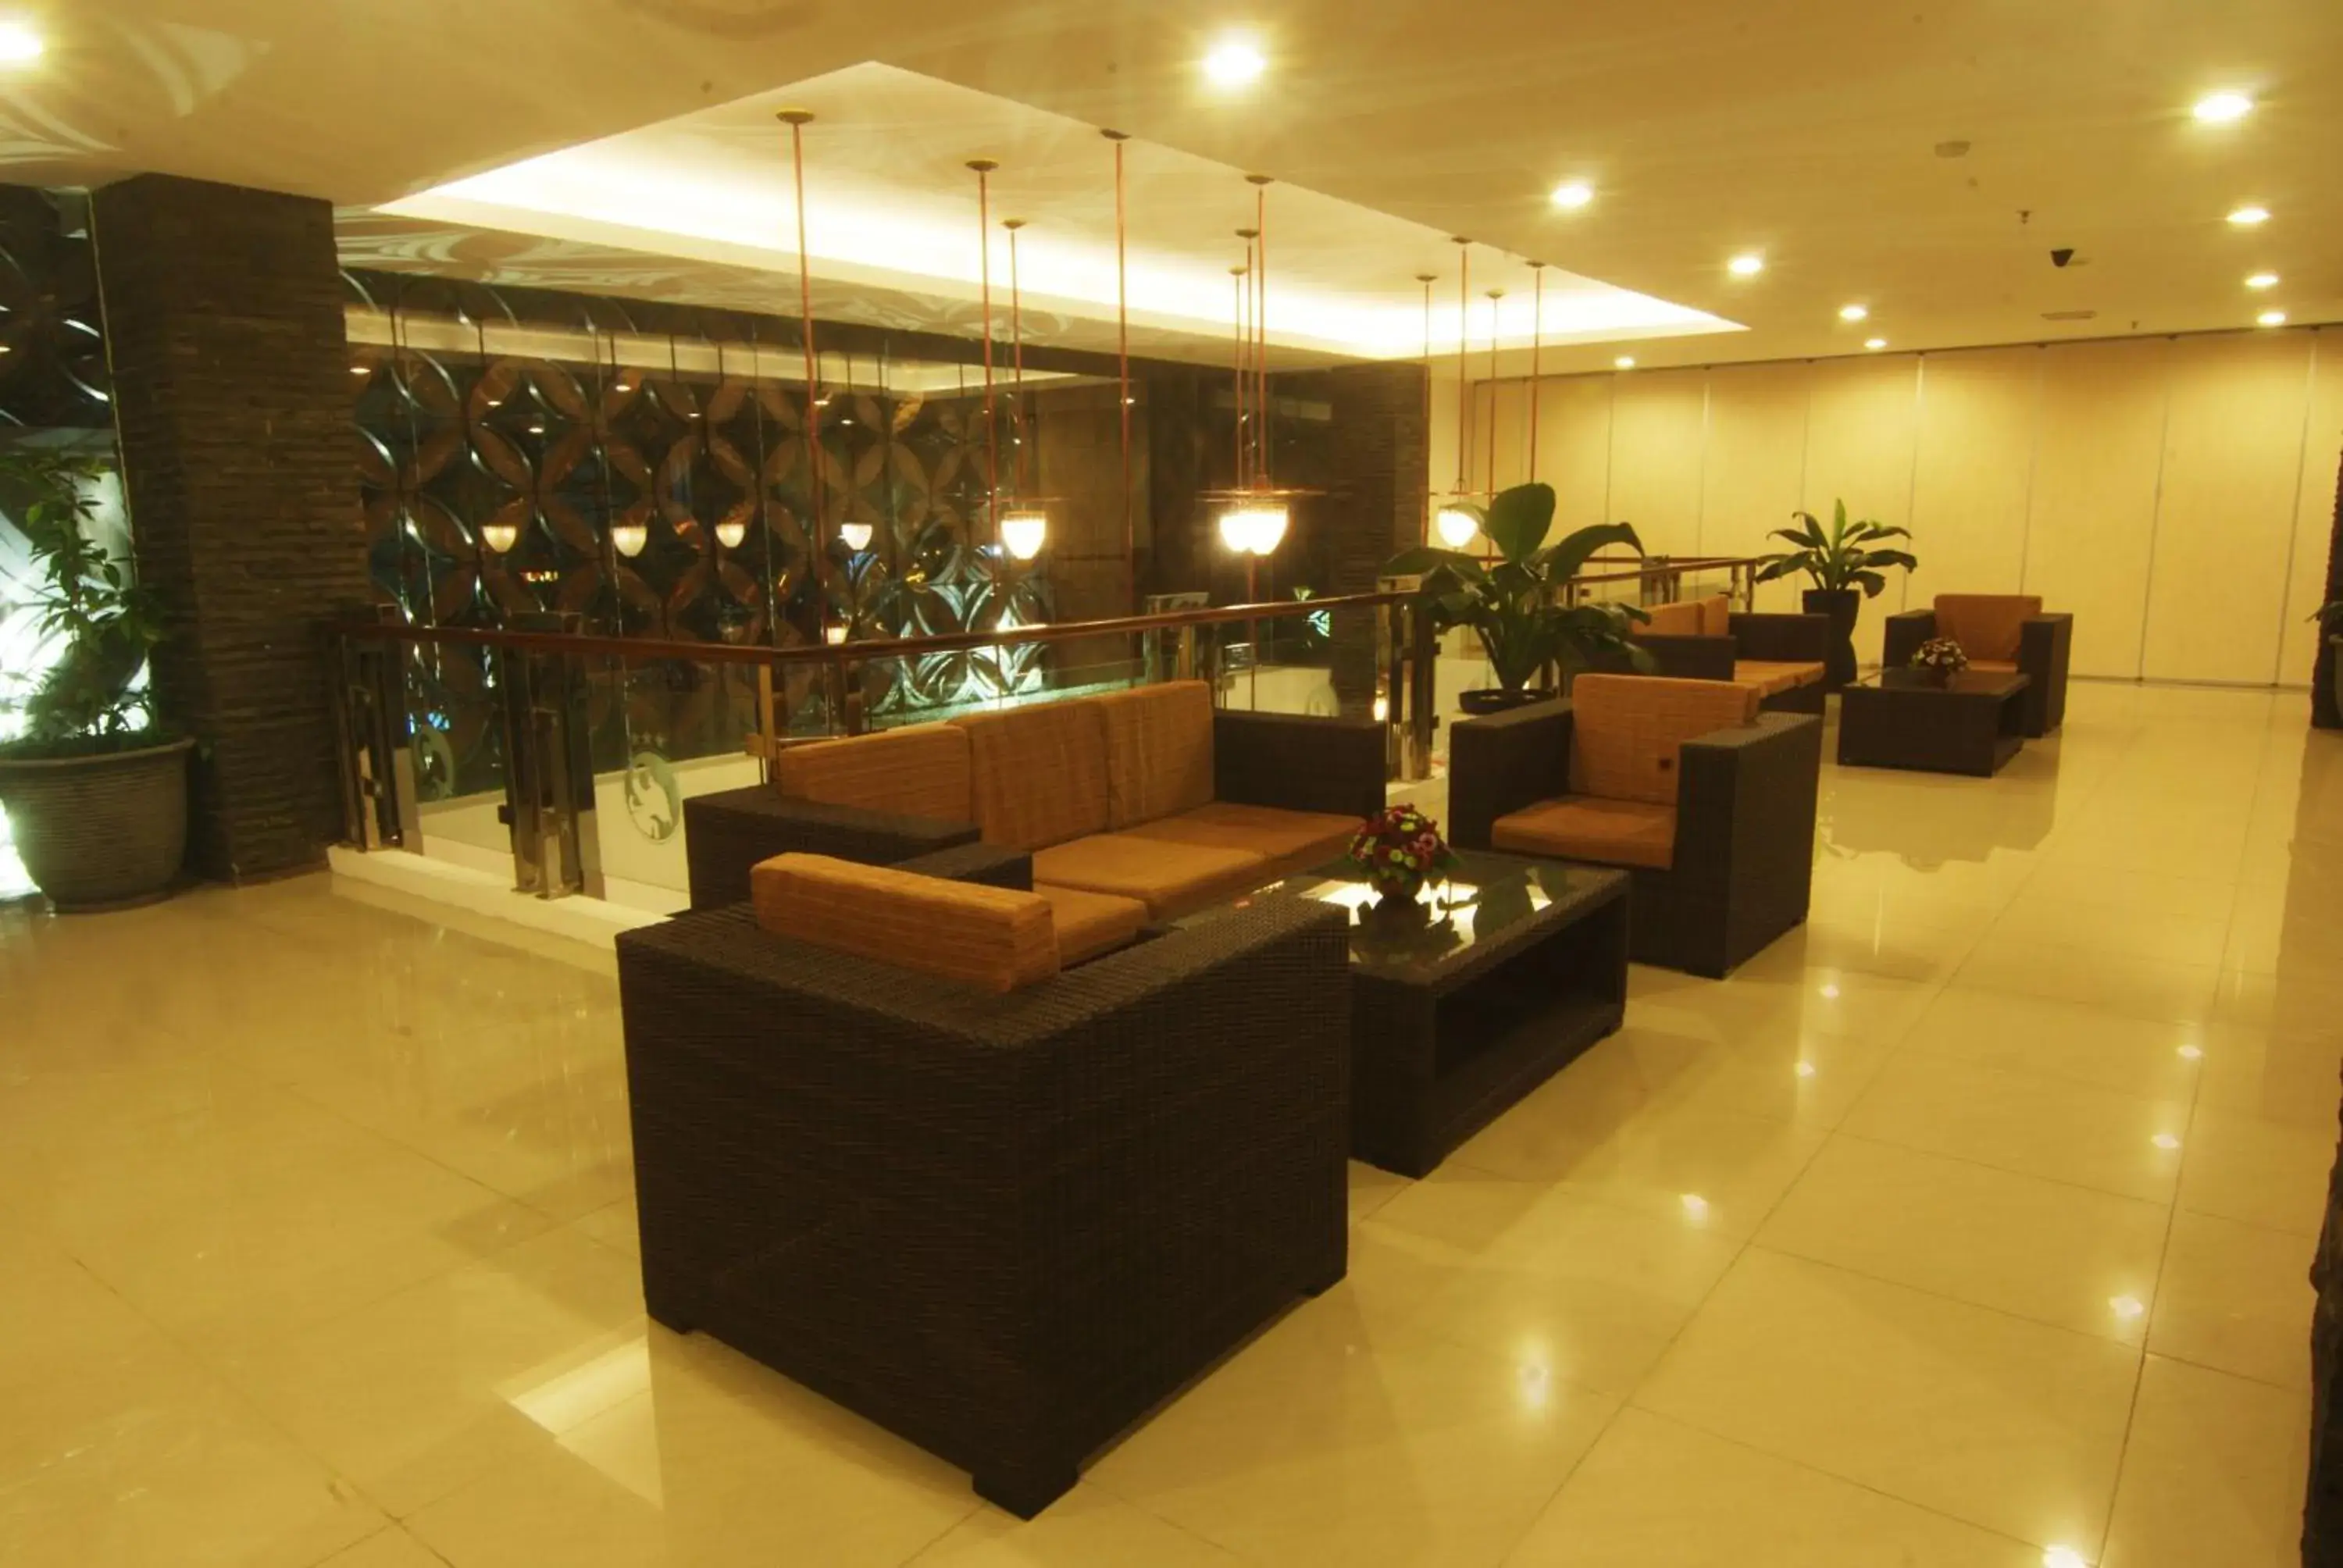 Lobby or reception, Lobby/Reception in Hotel Arjuna Yogyakarta